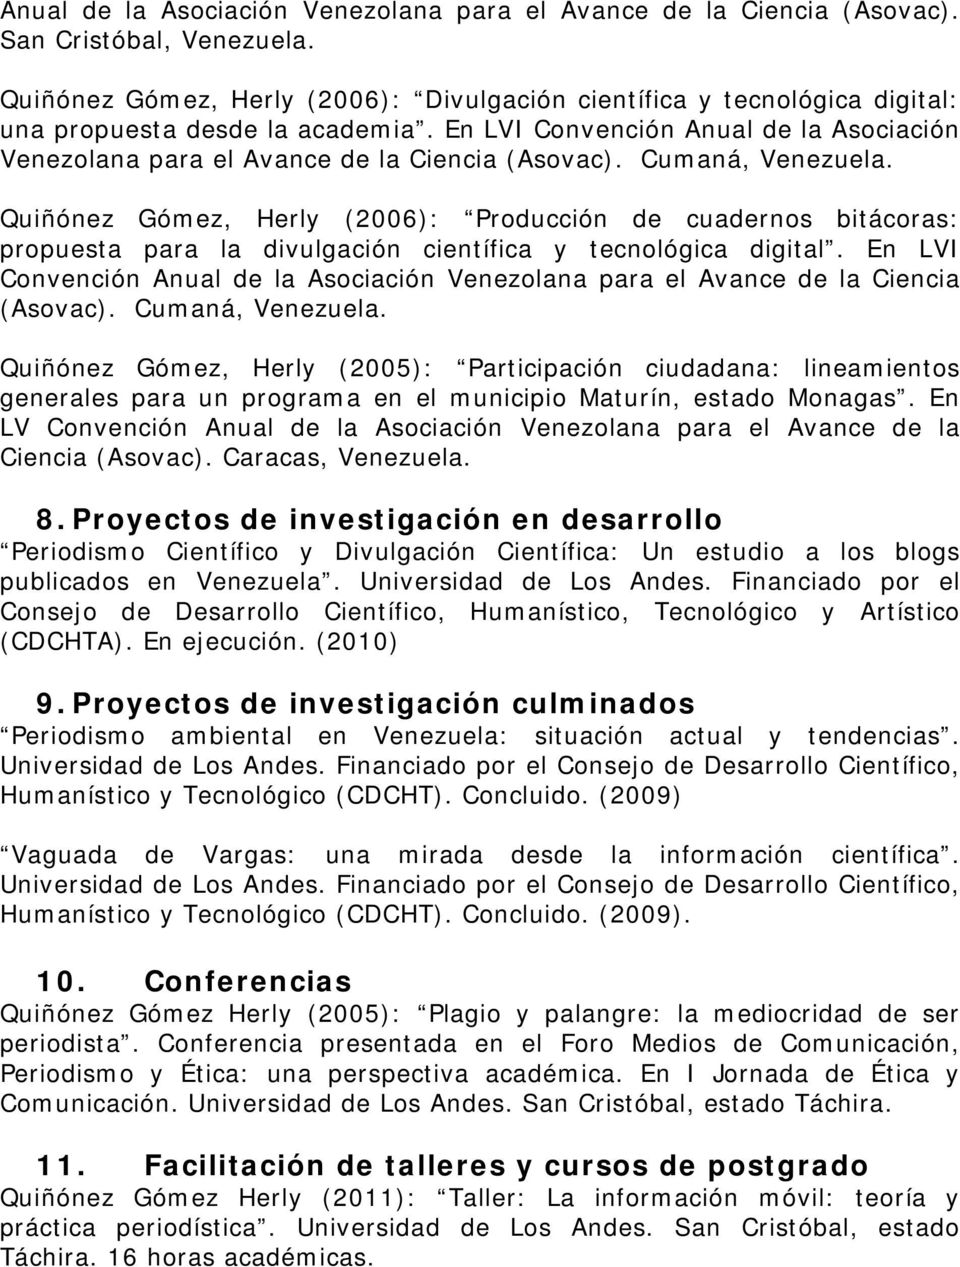 Cumaná, Quiñónez Gómez, Herly (2006): Producción de cuadernos bitácoras: propuesta para la divulgación científica y tecnológica digital.